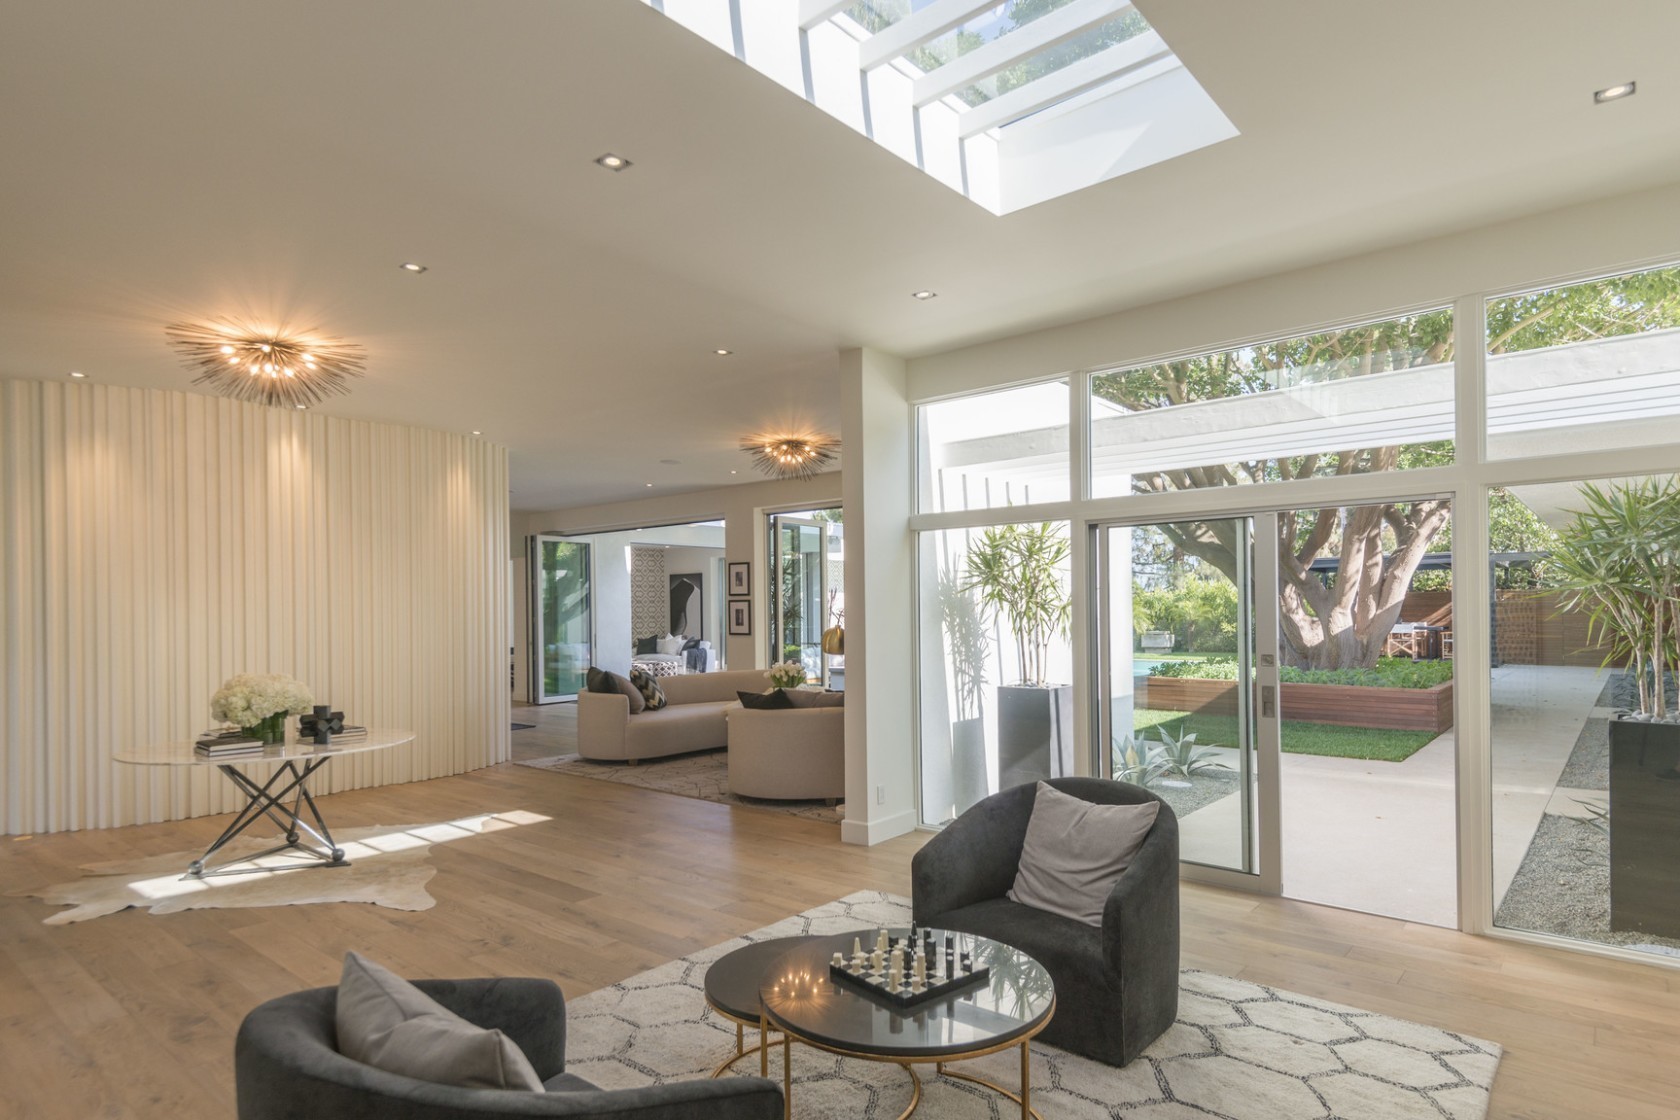 Cindy Crawford coloca mansão na Califórnia à venda por R$ 90 milhões  (Foto: Divulgação)